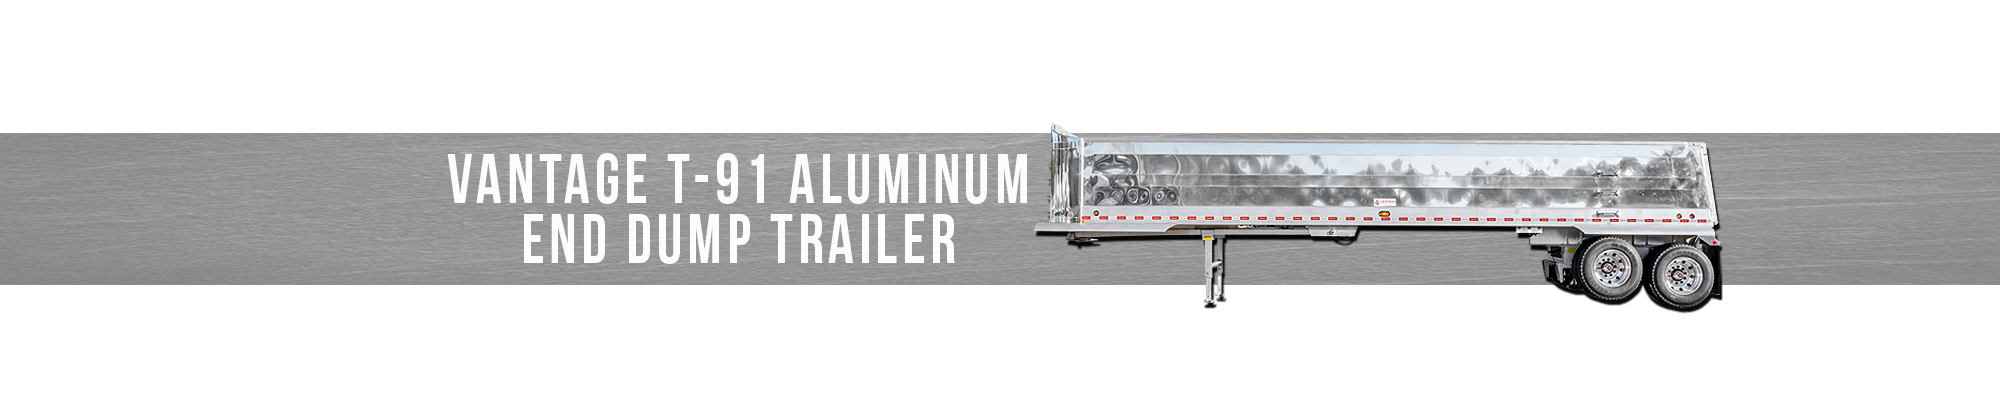 Vantage T-91 Aluminum End Dump Trailer